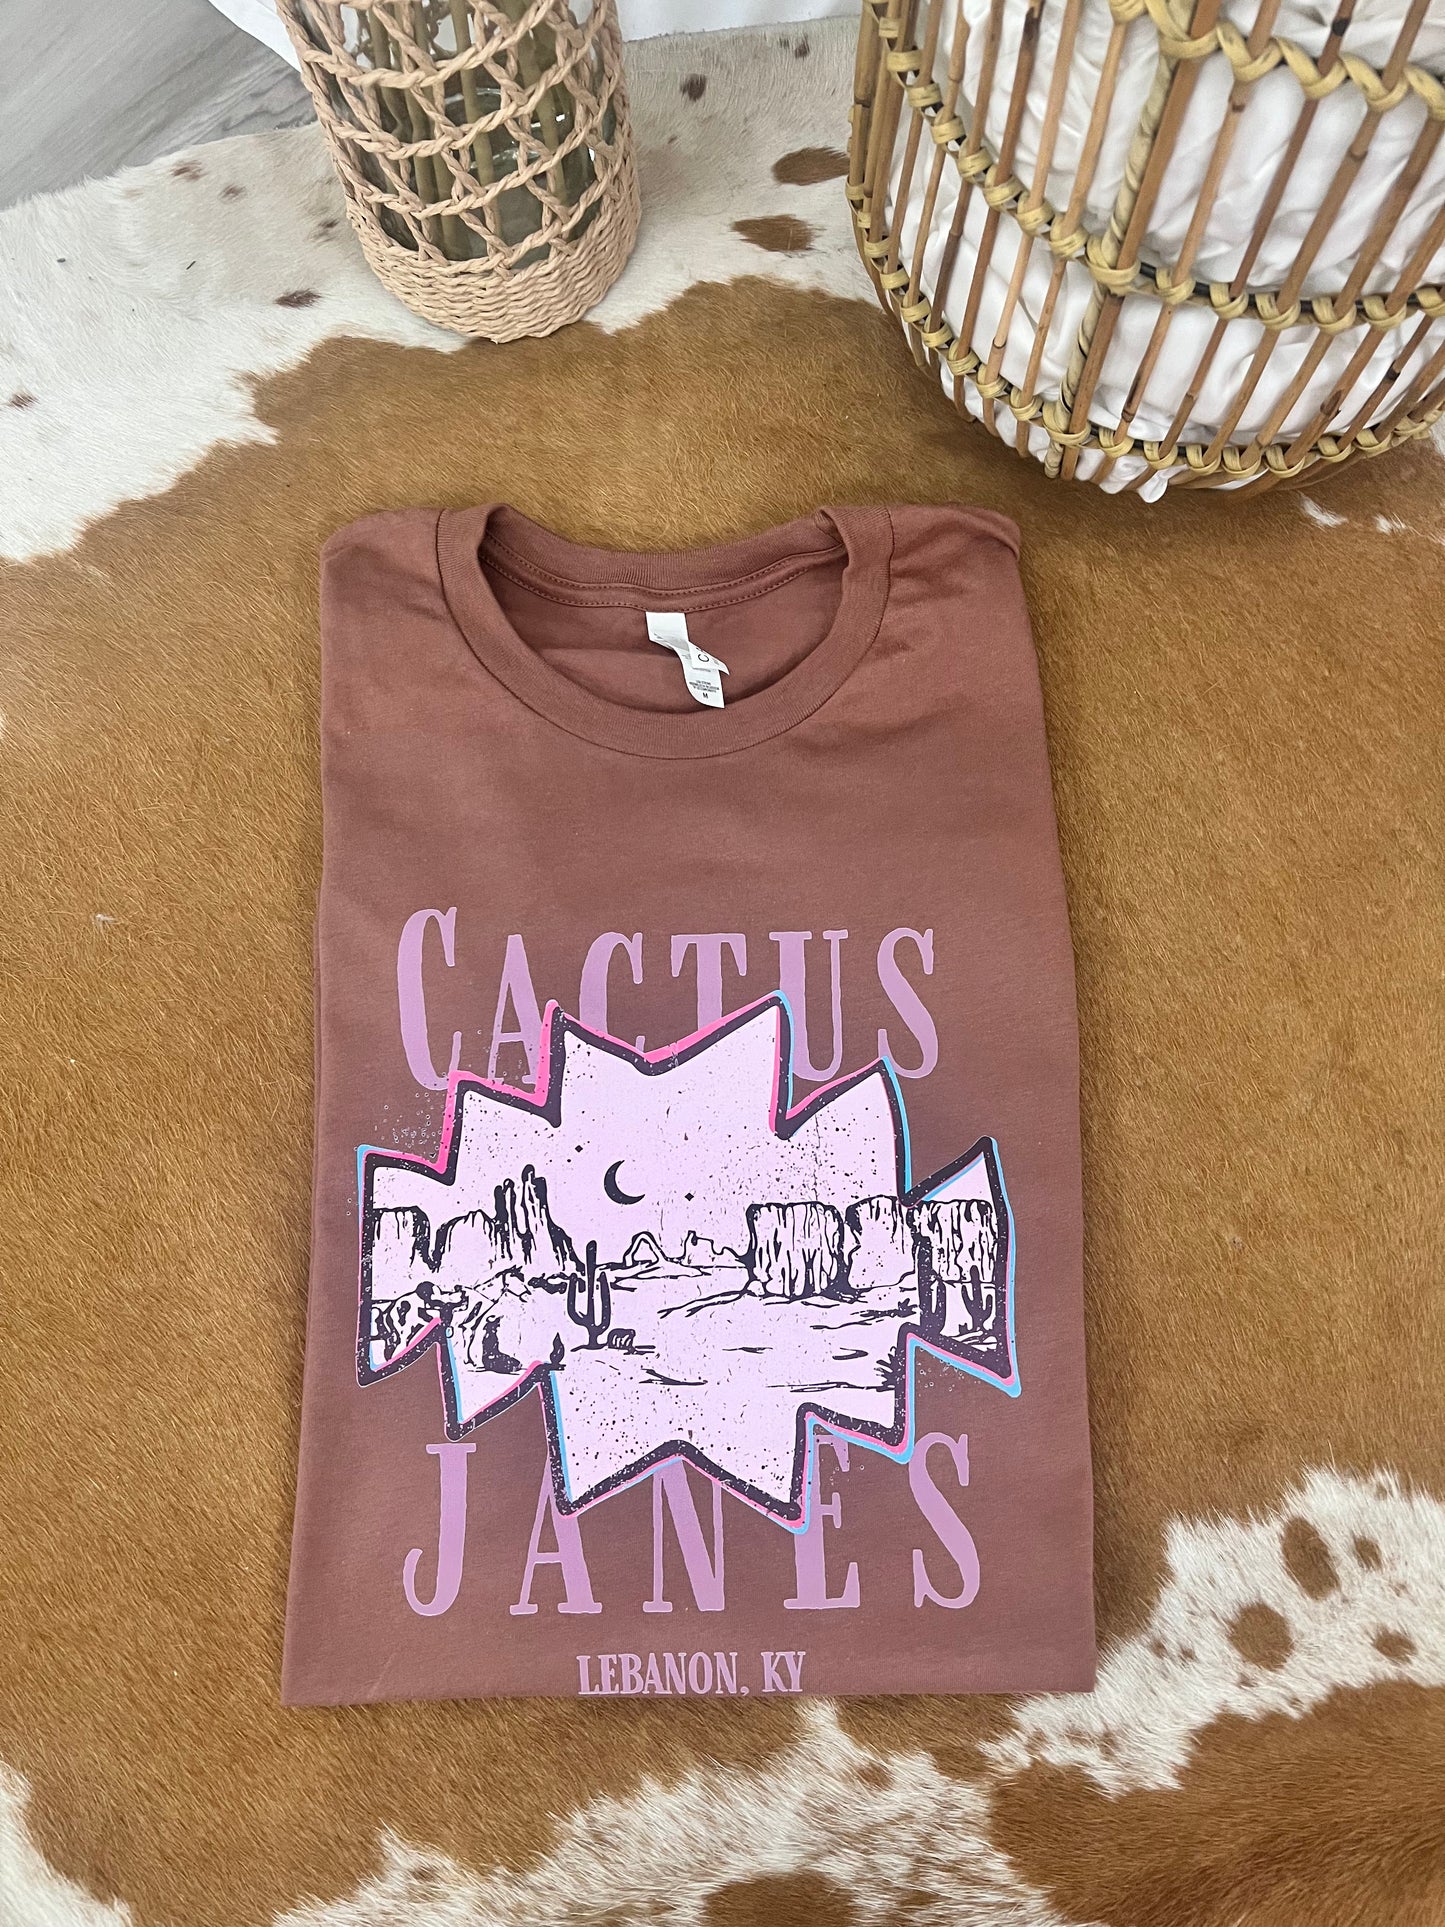 Cactus Janes Western Tee